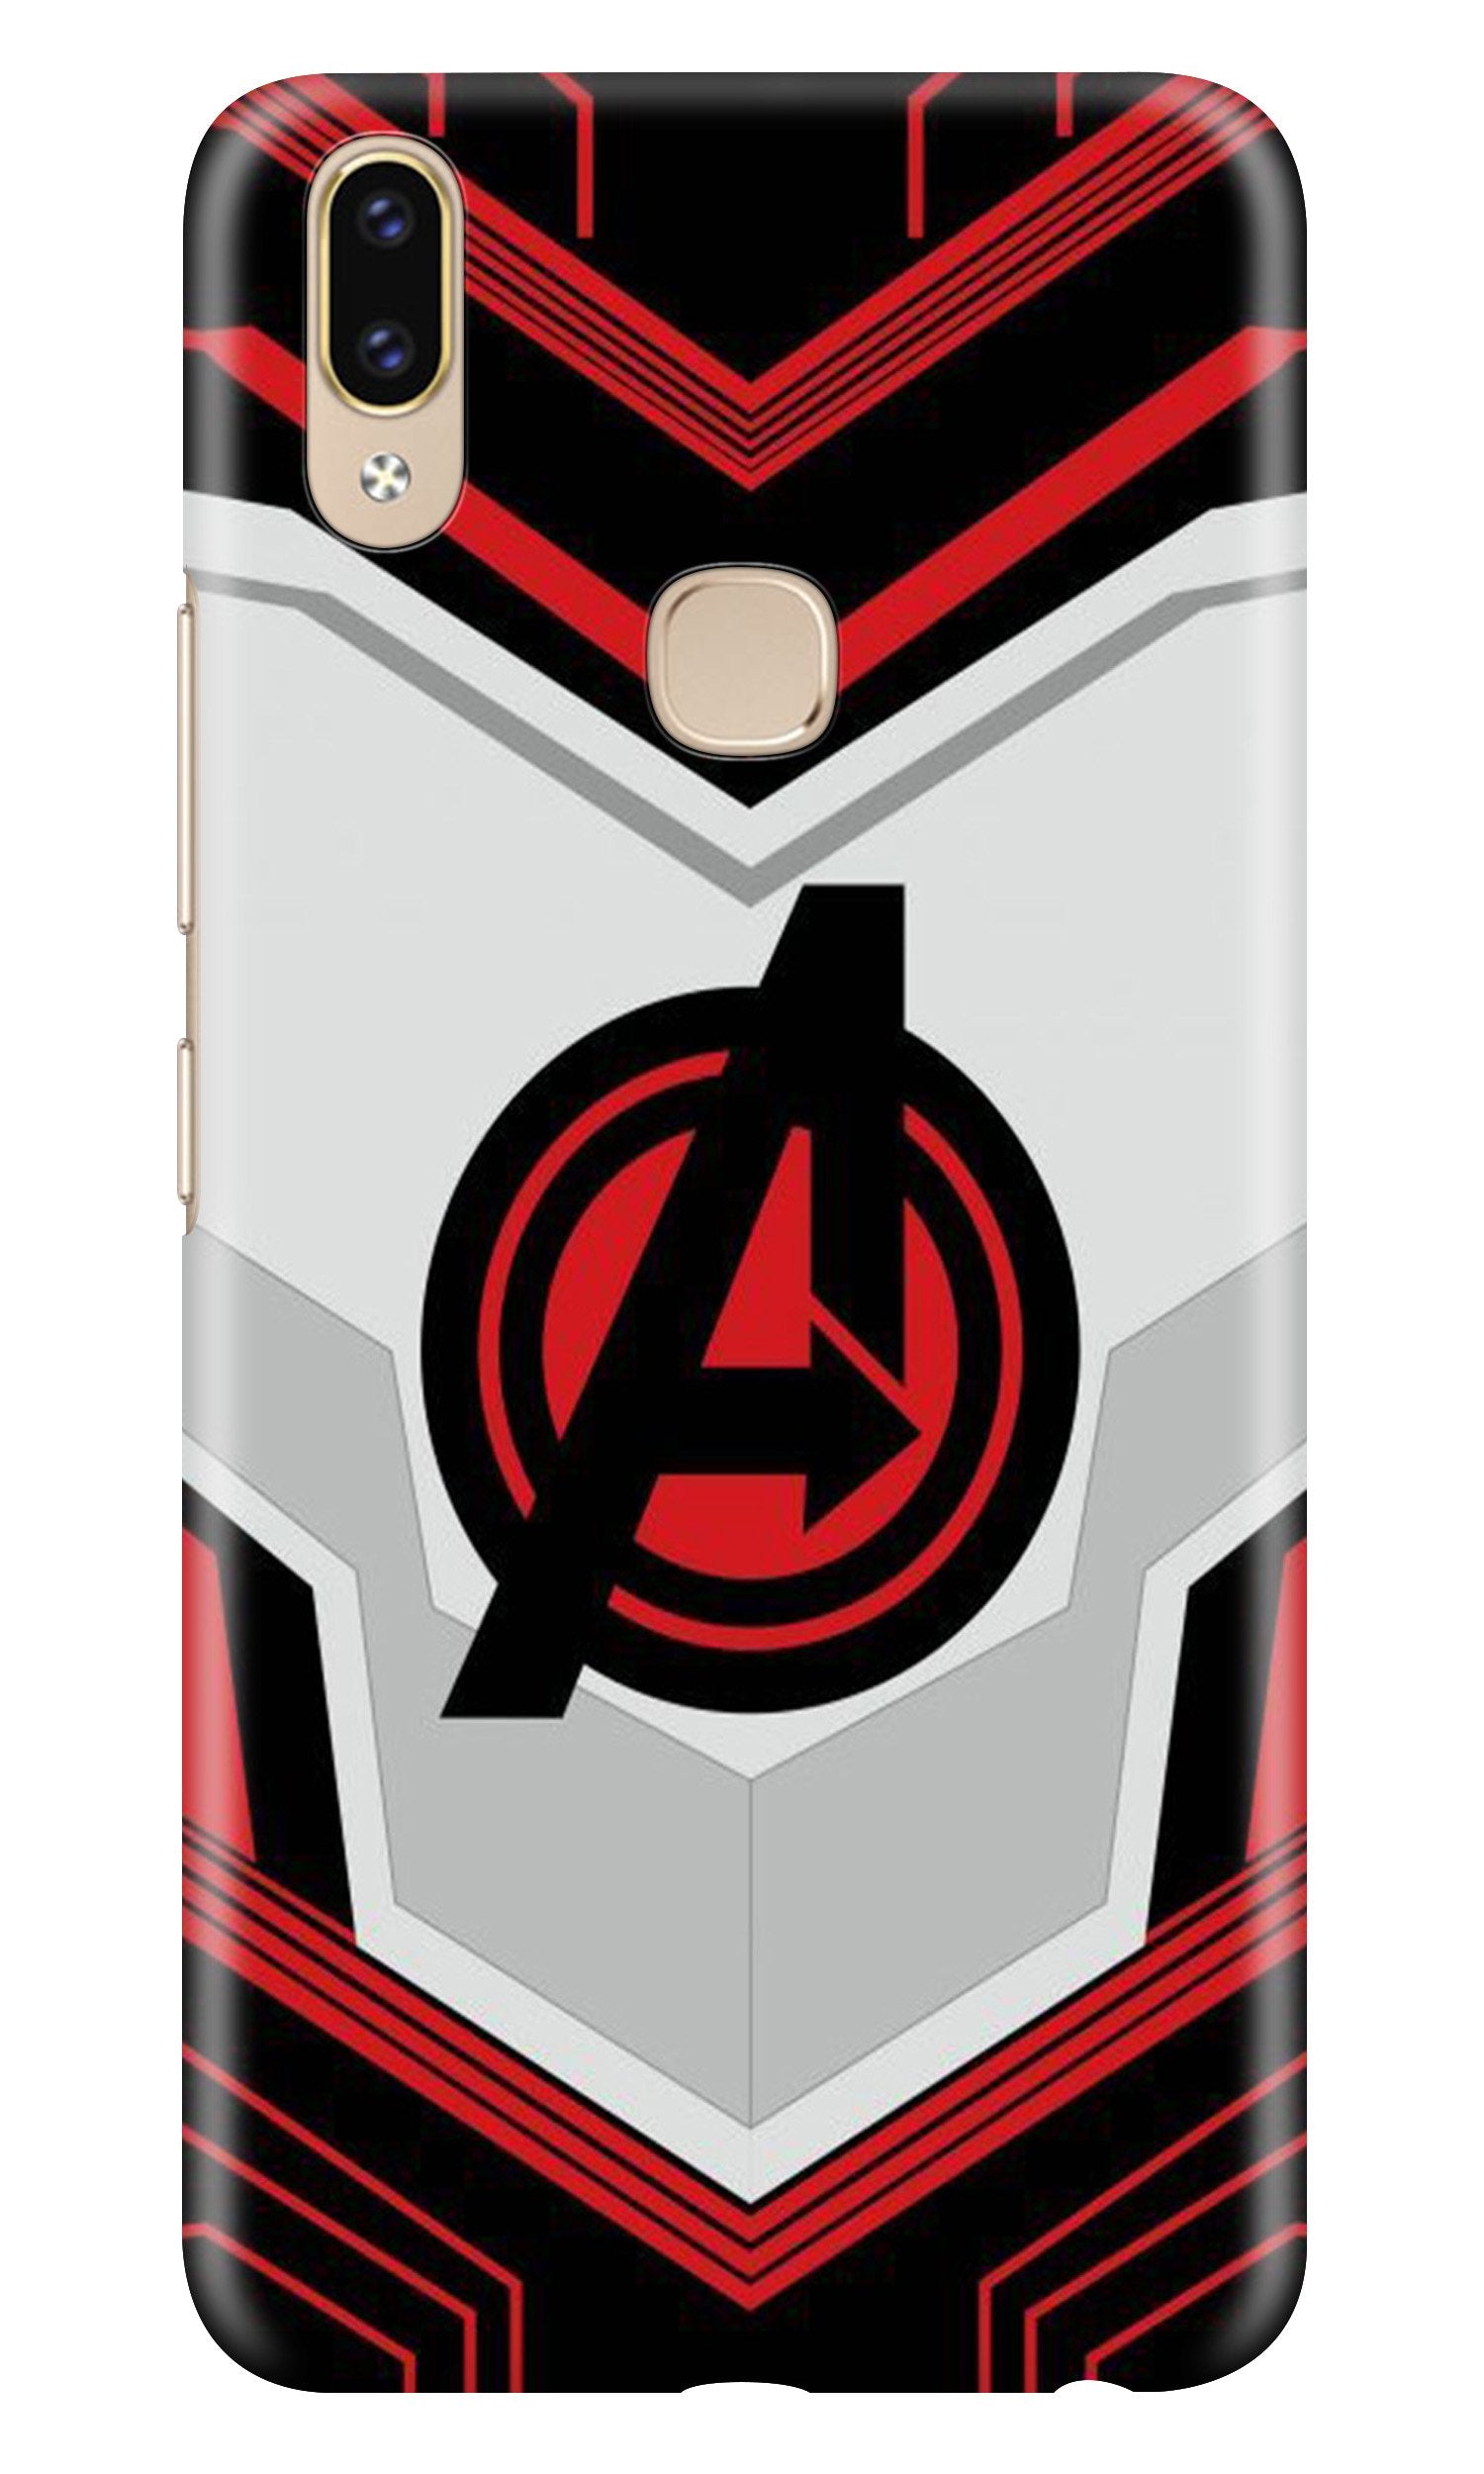 Avengers2 Case for Asus Zenfone Max Pro M2 (Design No. 255)